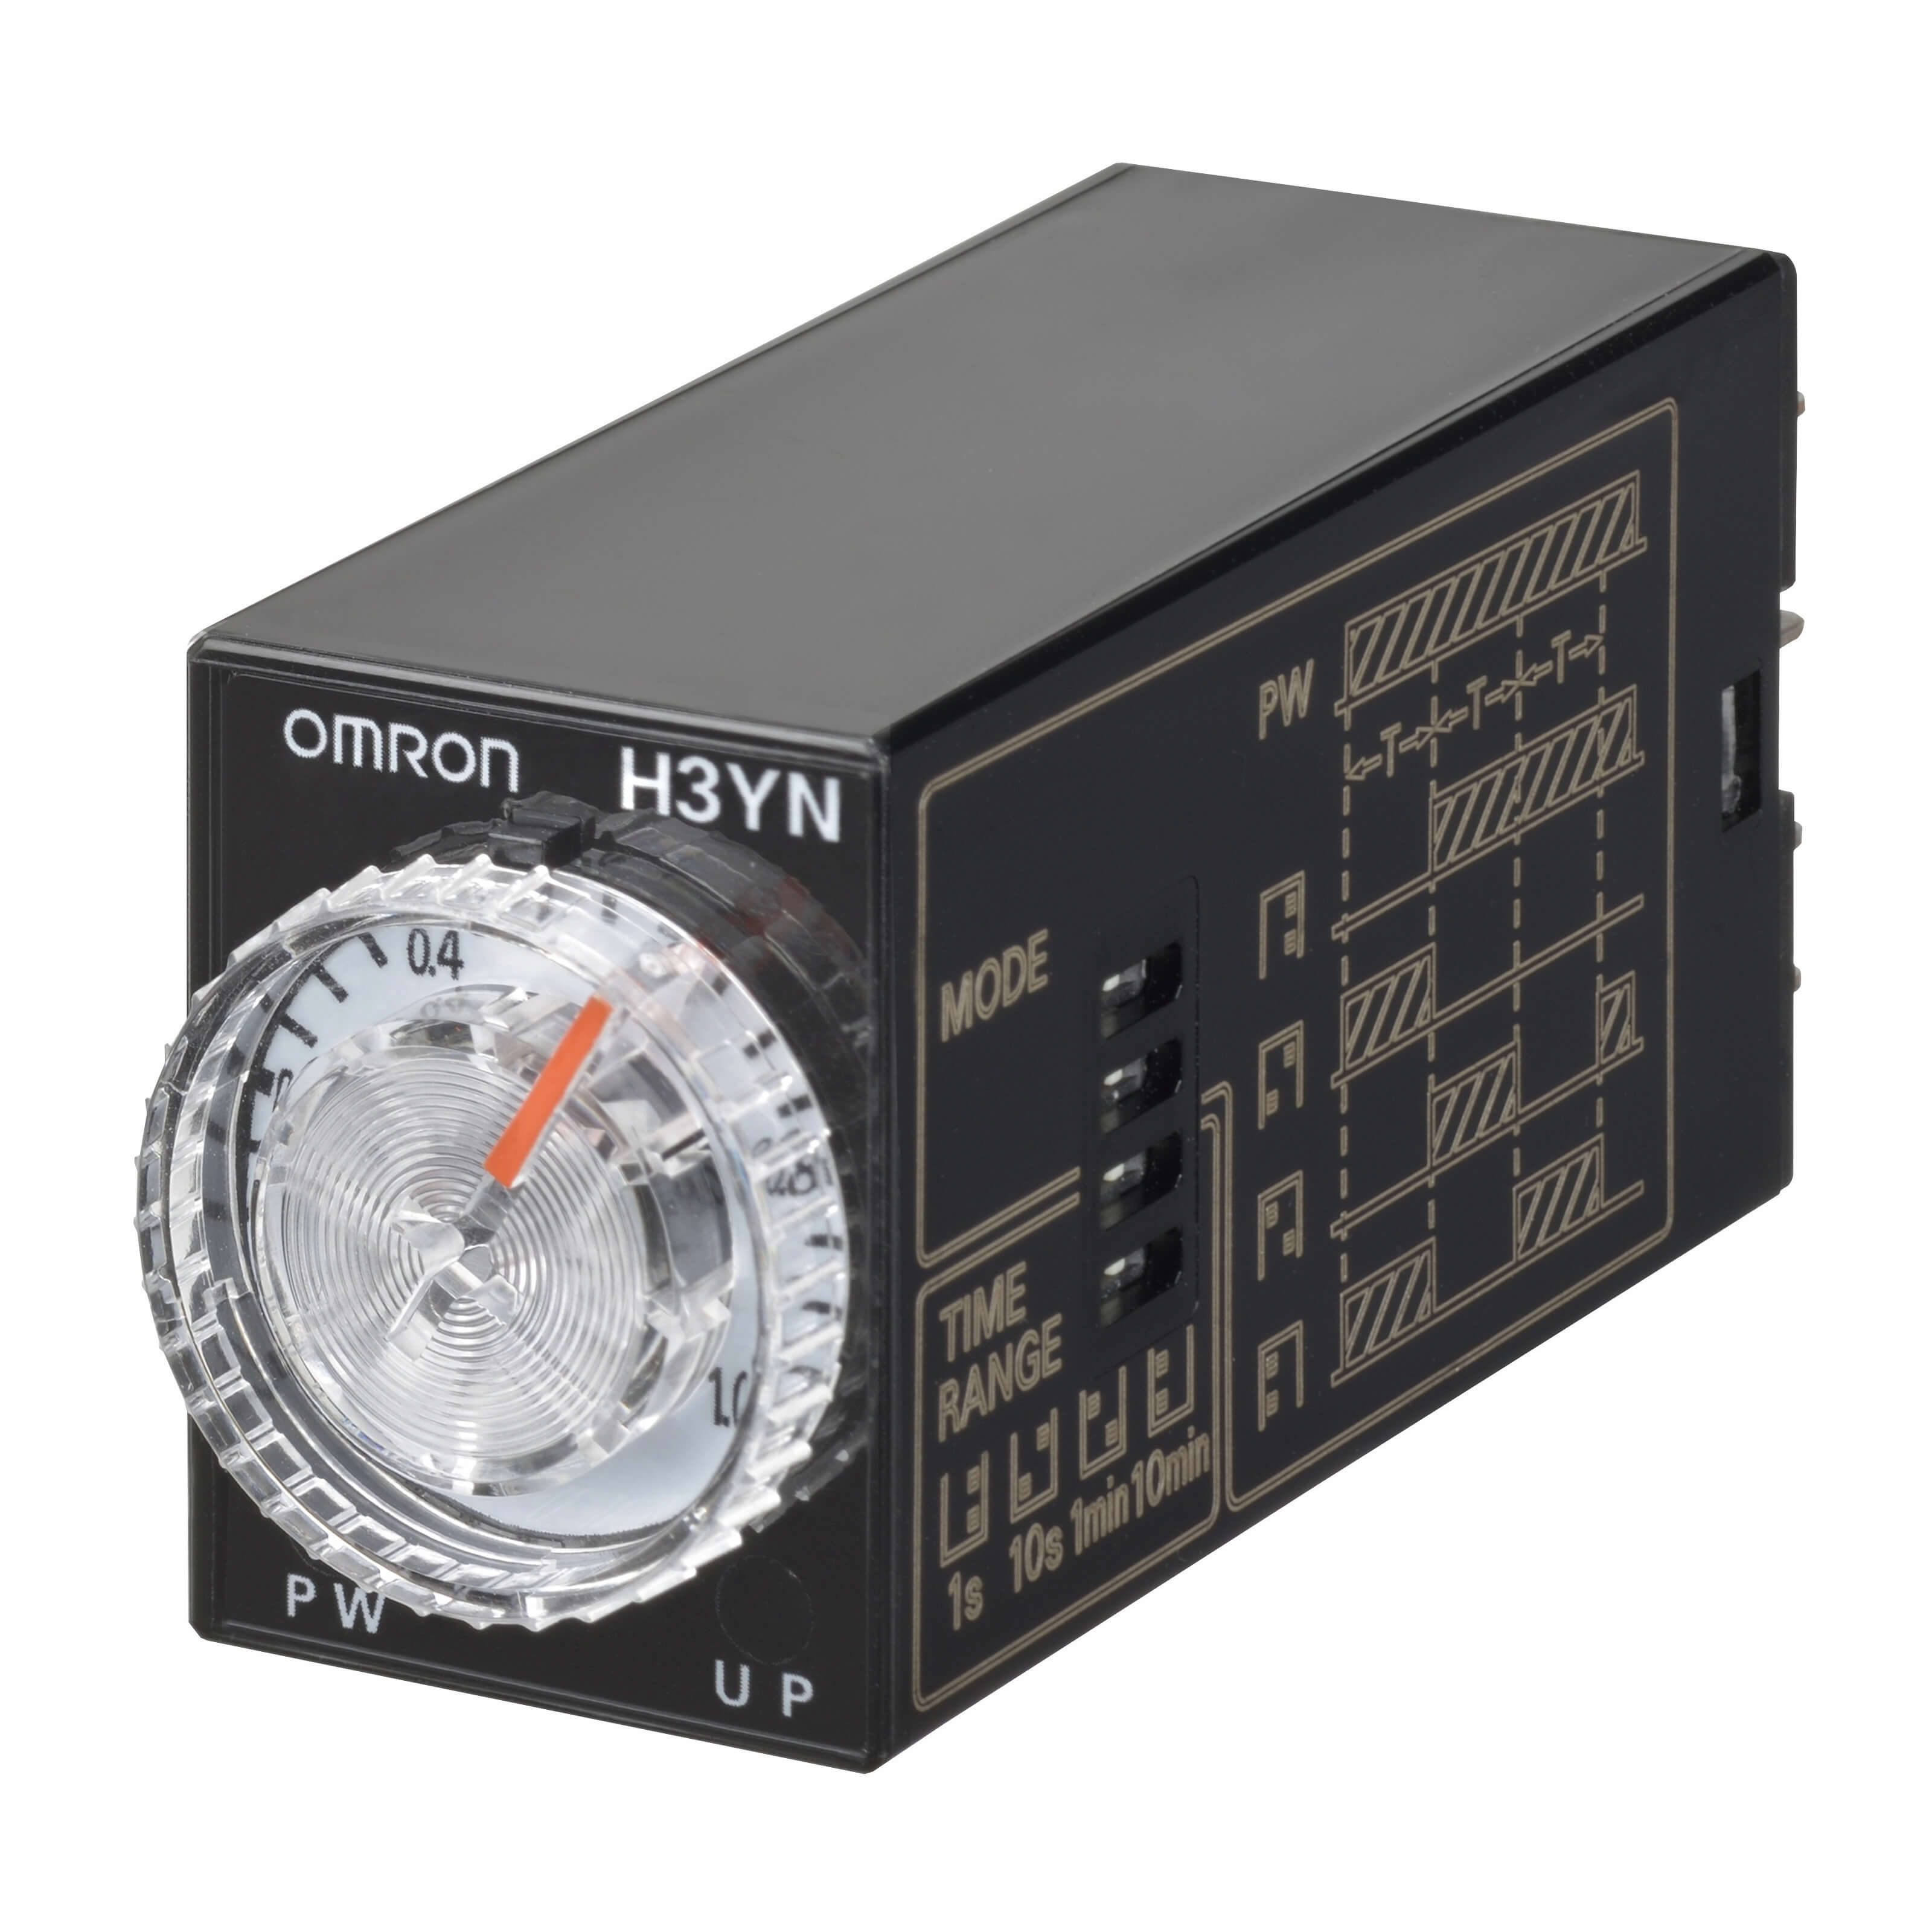 H3YN-4-B AC200-230 | OMRON, Europe